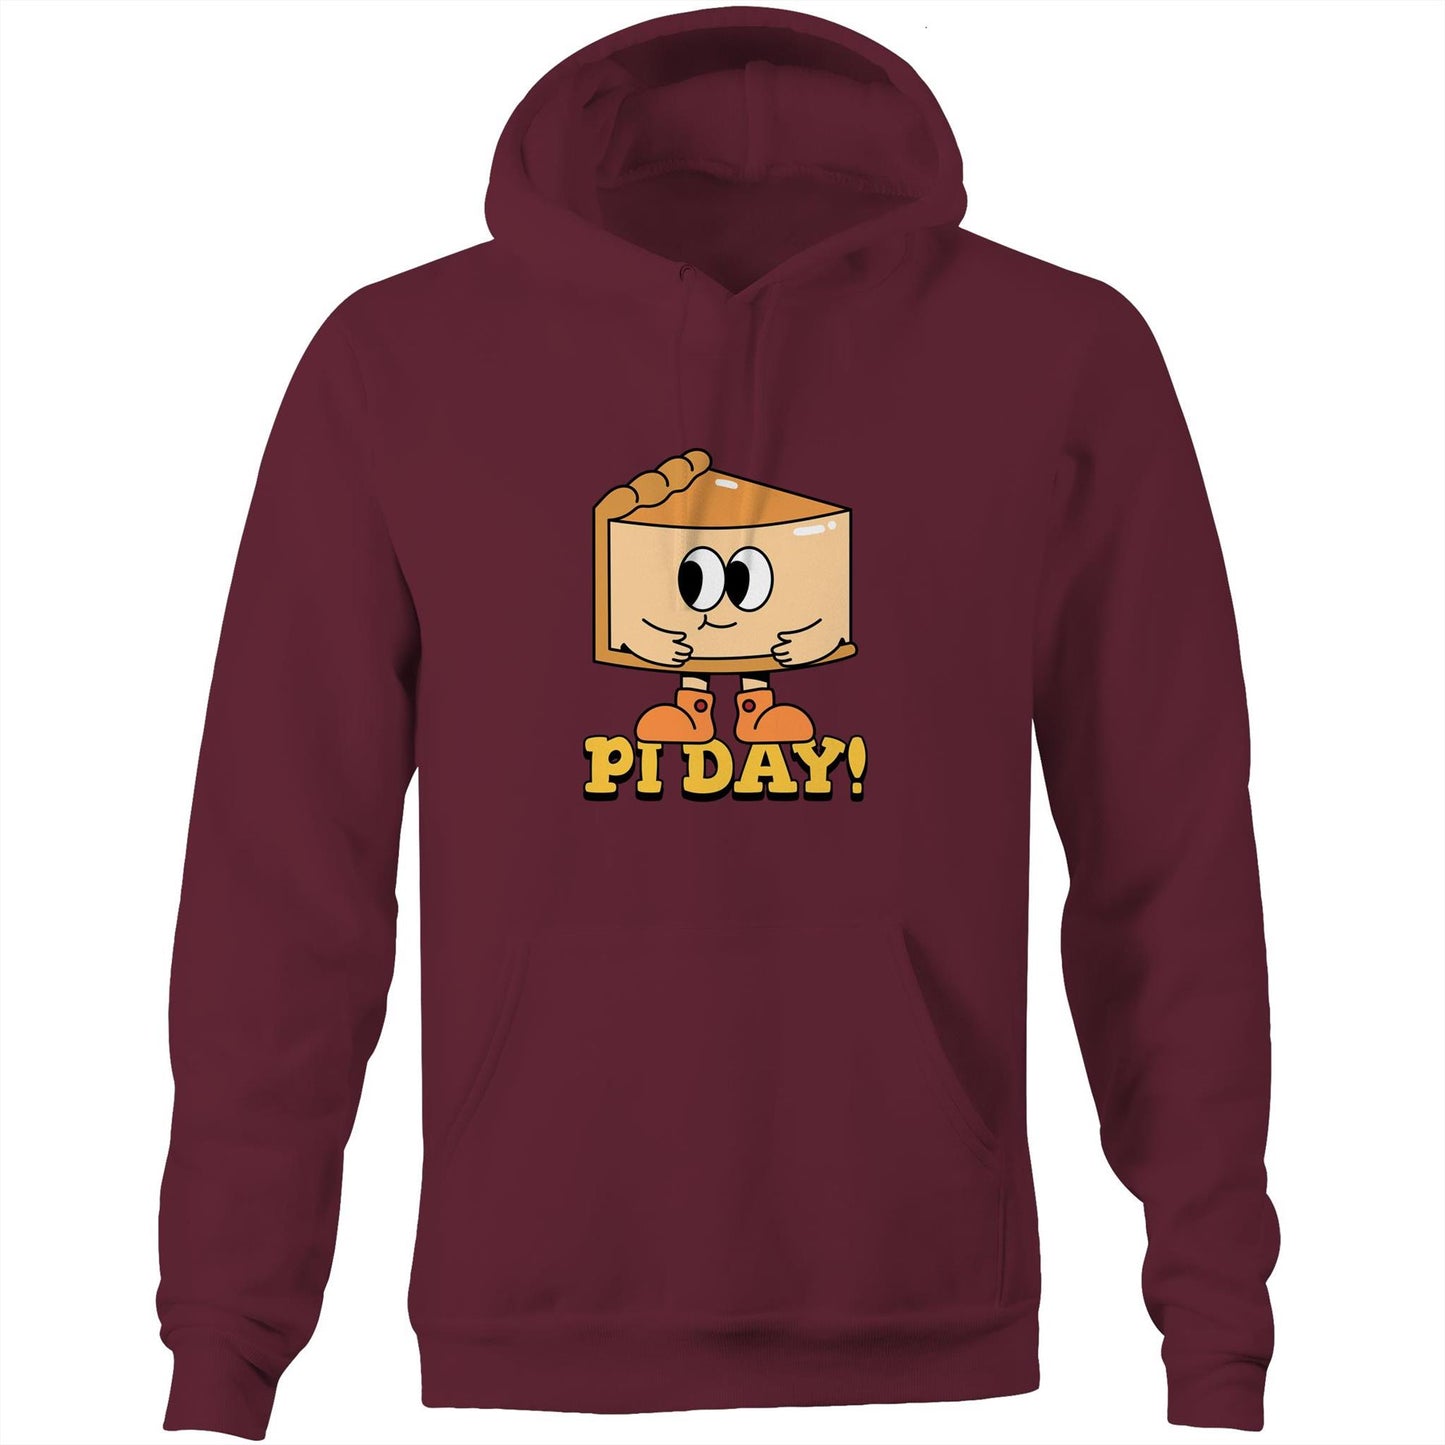 Pi Day - Pocket Hoodie Sweatshirt Burgundy Hoodie Maths Science